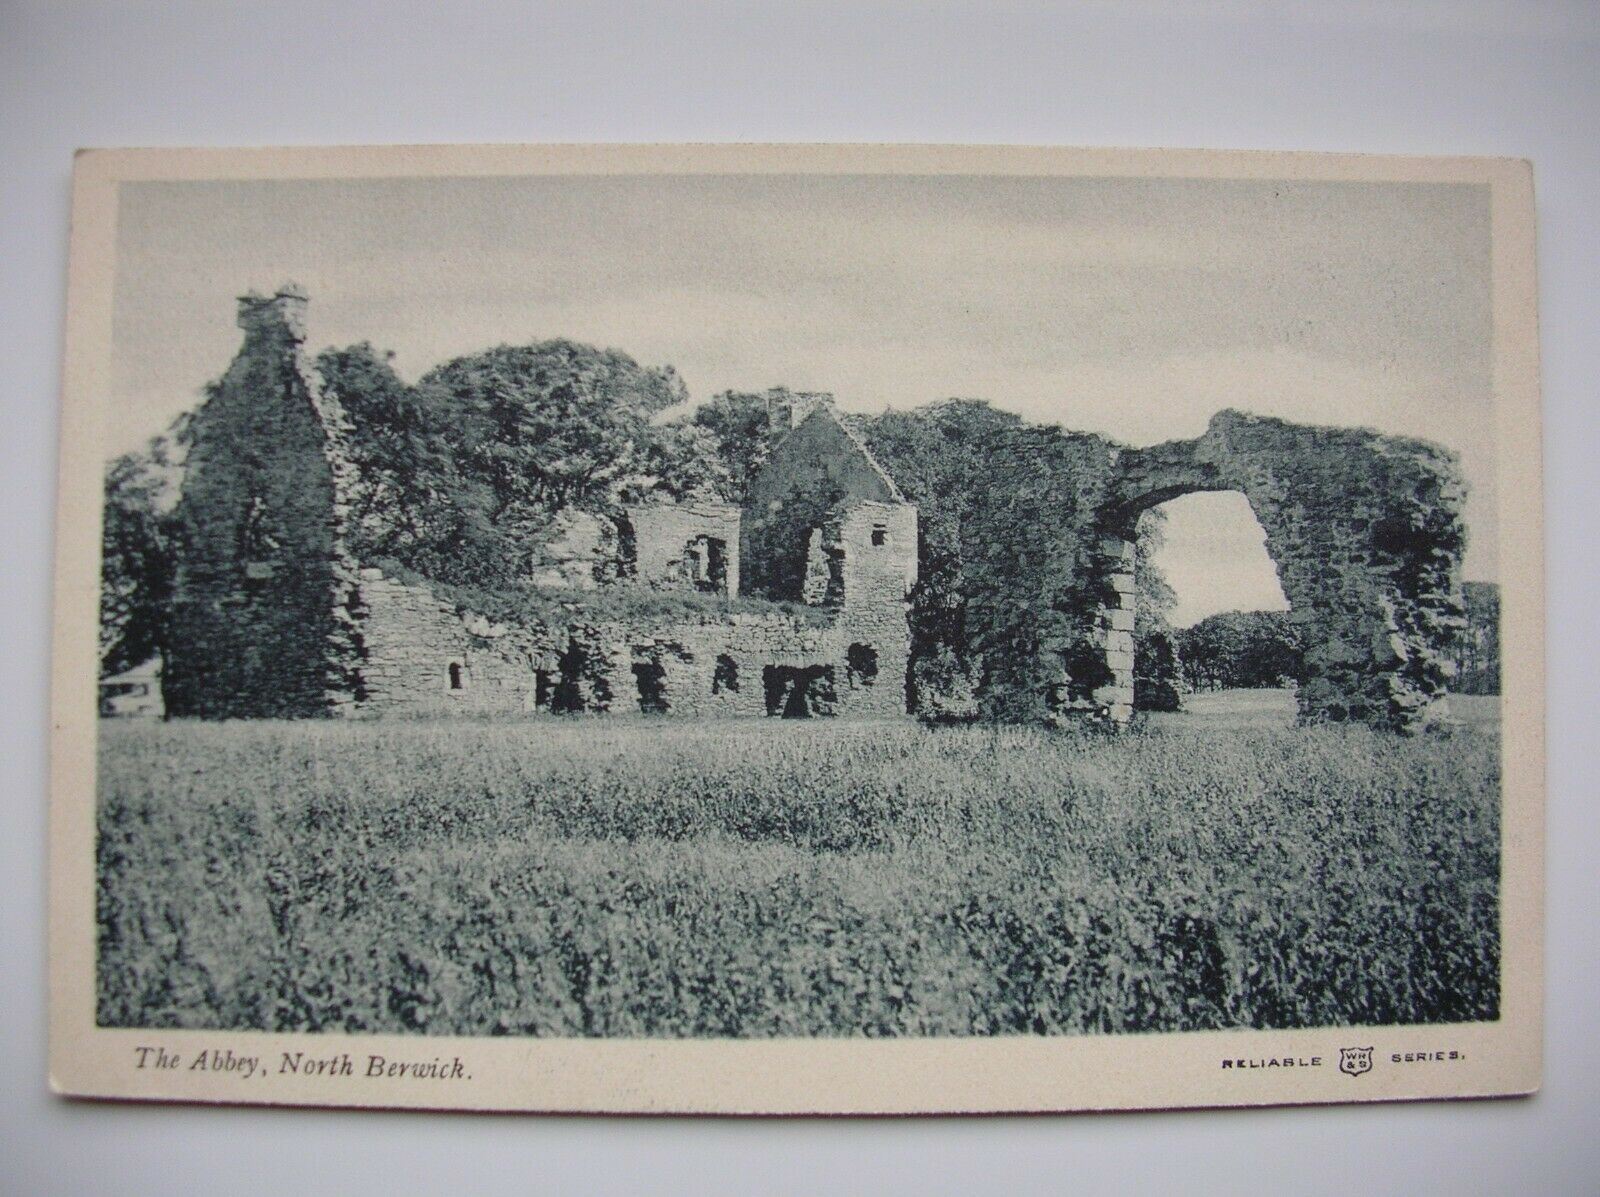 House Clearance - North Berwick – The Abbey. Near Dunbar, Haddington etc. (Reliable Series)